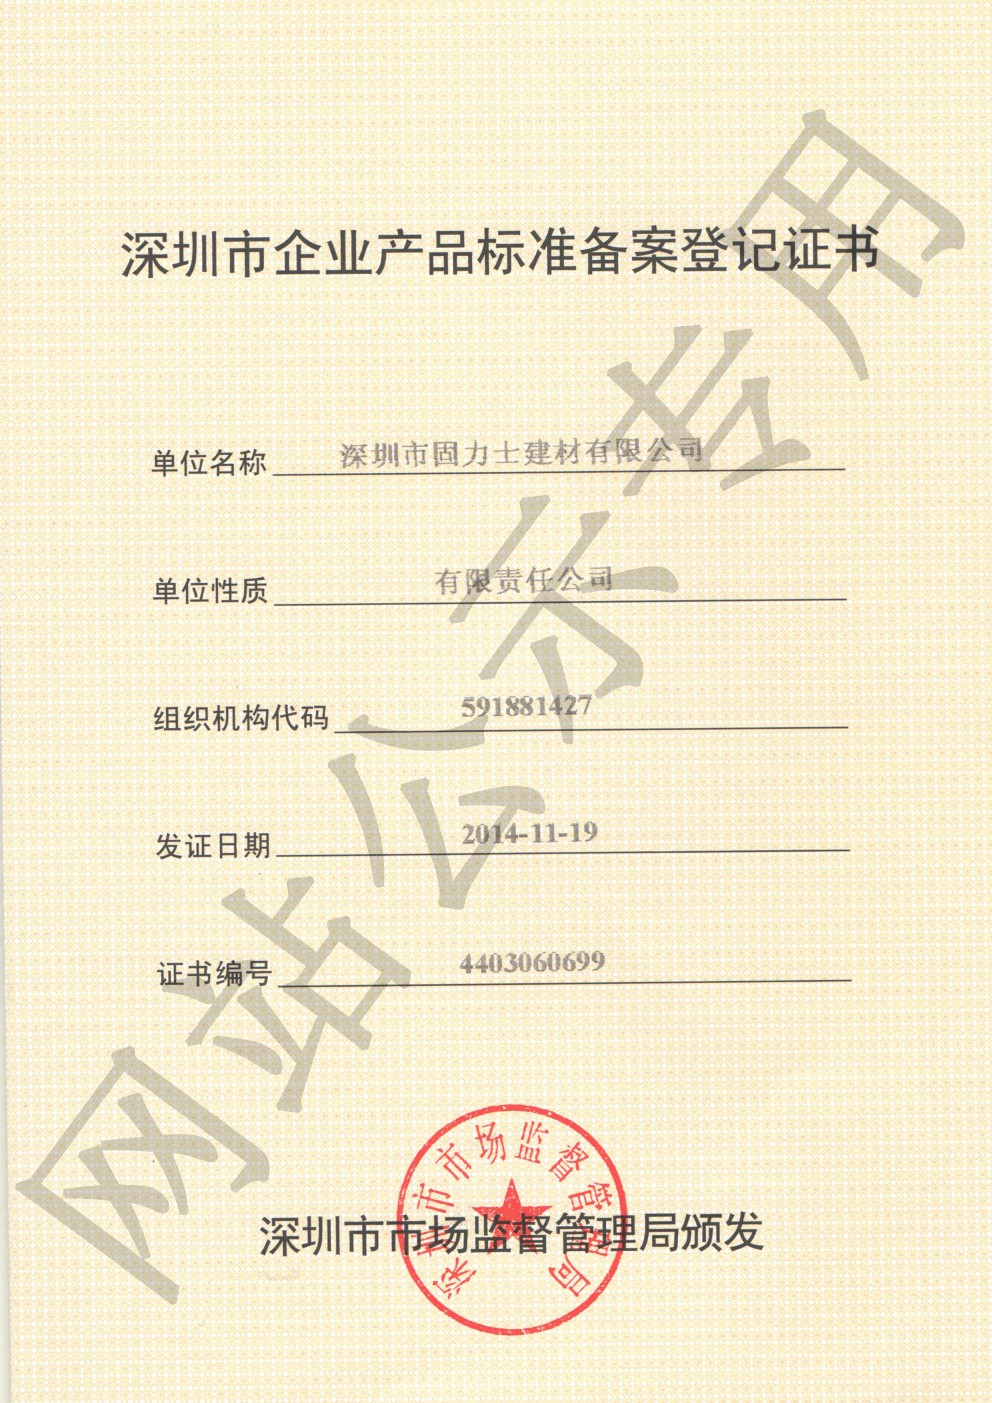 富文镇企业产品标准登记证书